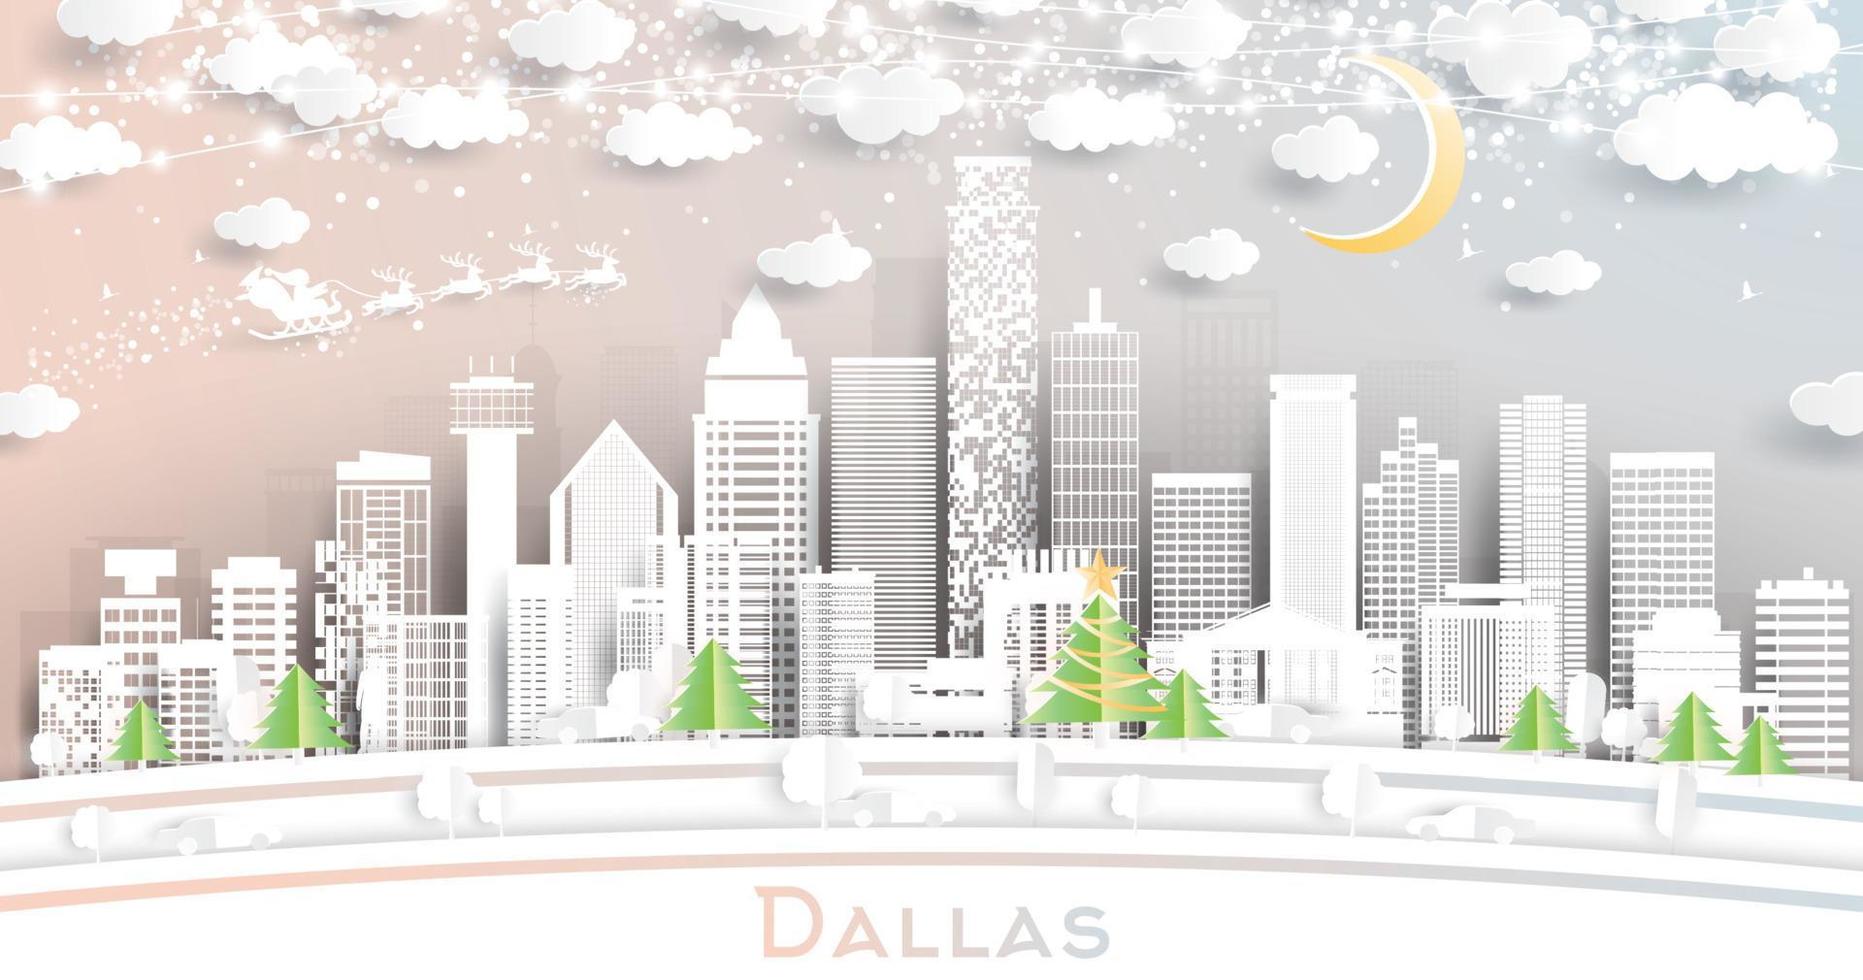 Dallas Texas stad horizon in papier besnoeiing stijl met sneeuwvlokken, maan en neon guirlande. vector